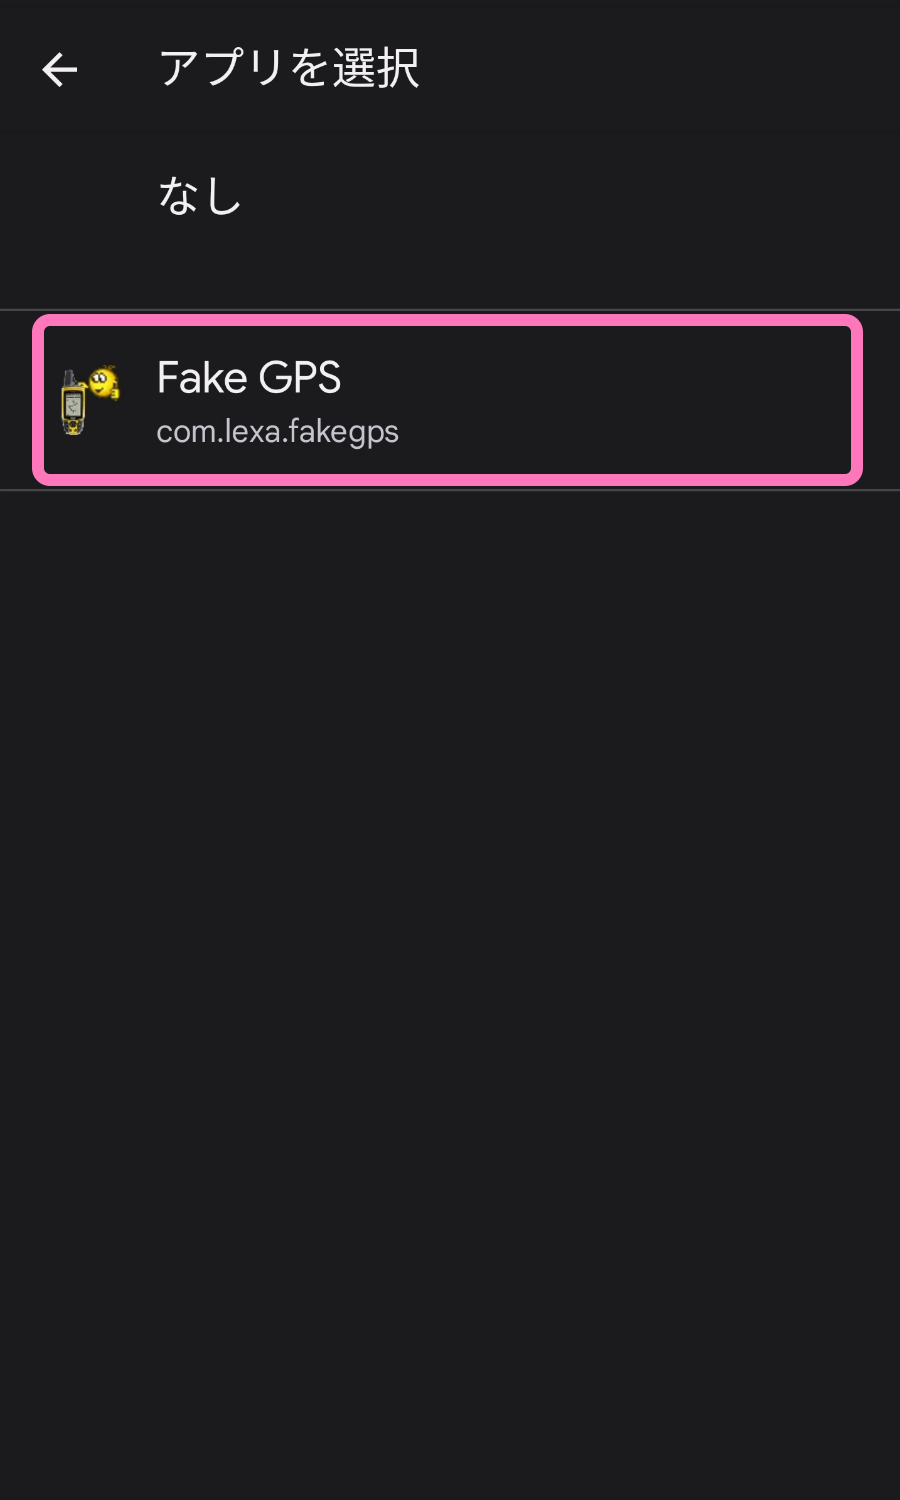 インストールした Fake GPS を選択